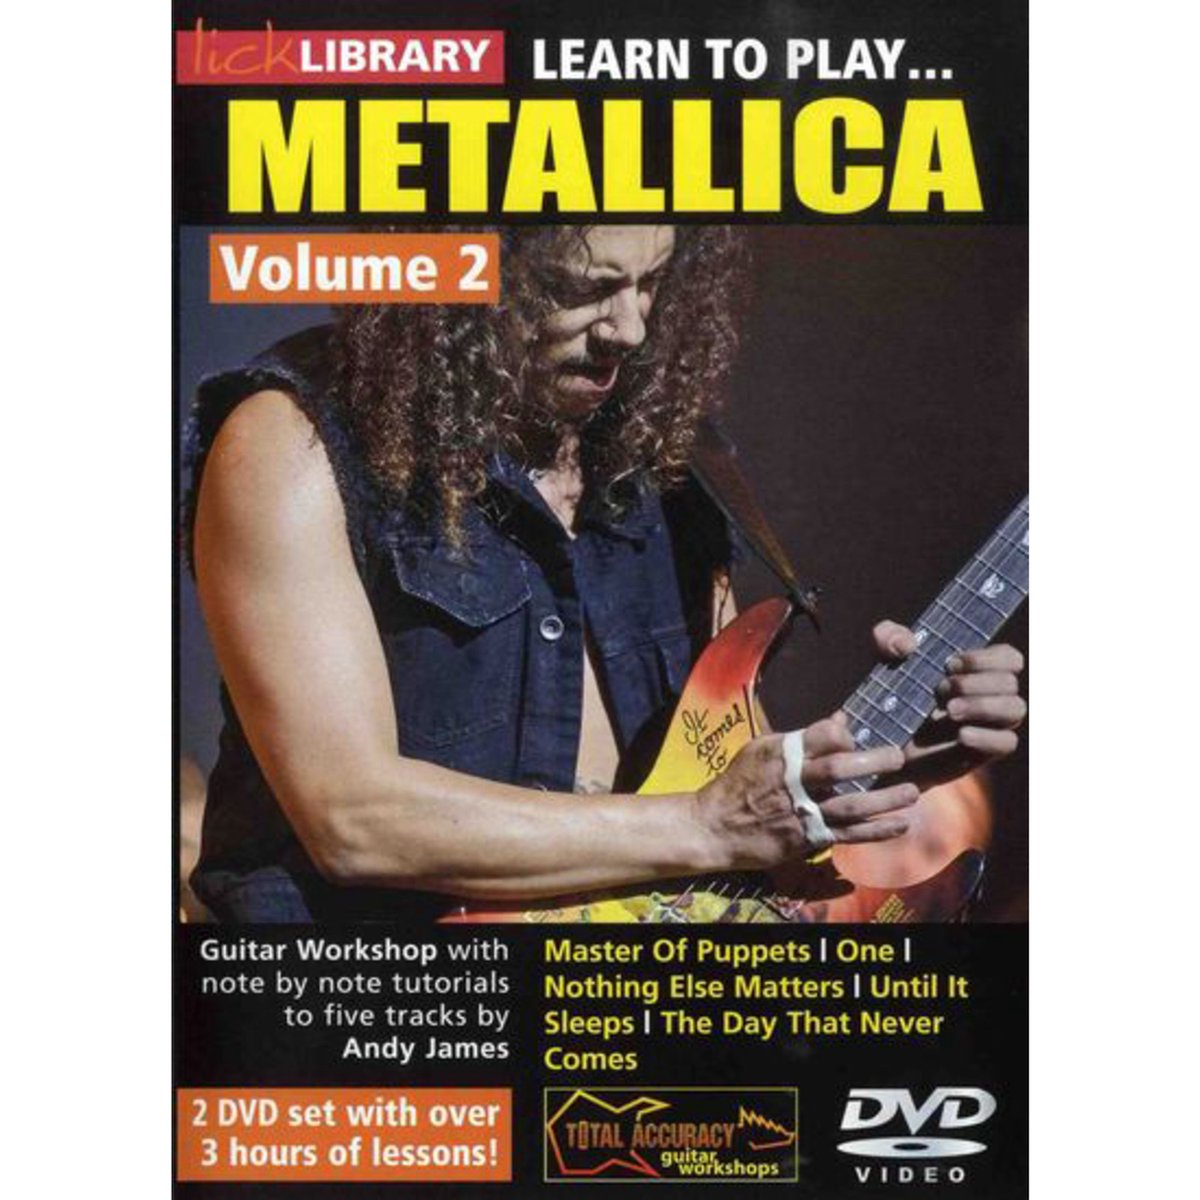 Roadrock International Lick Library - metallica 2 Learn to play (gitaar), DVD - DVD / CD / Multimedia: M - N